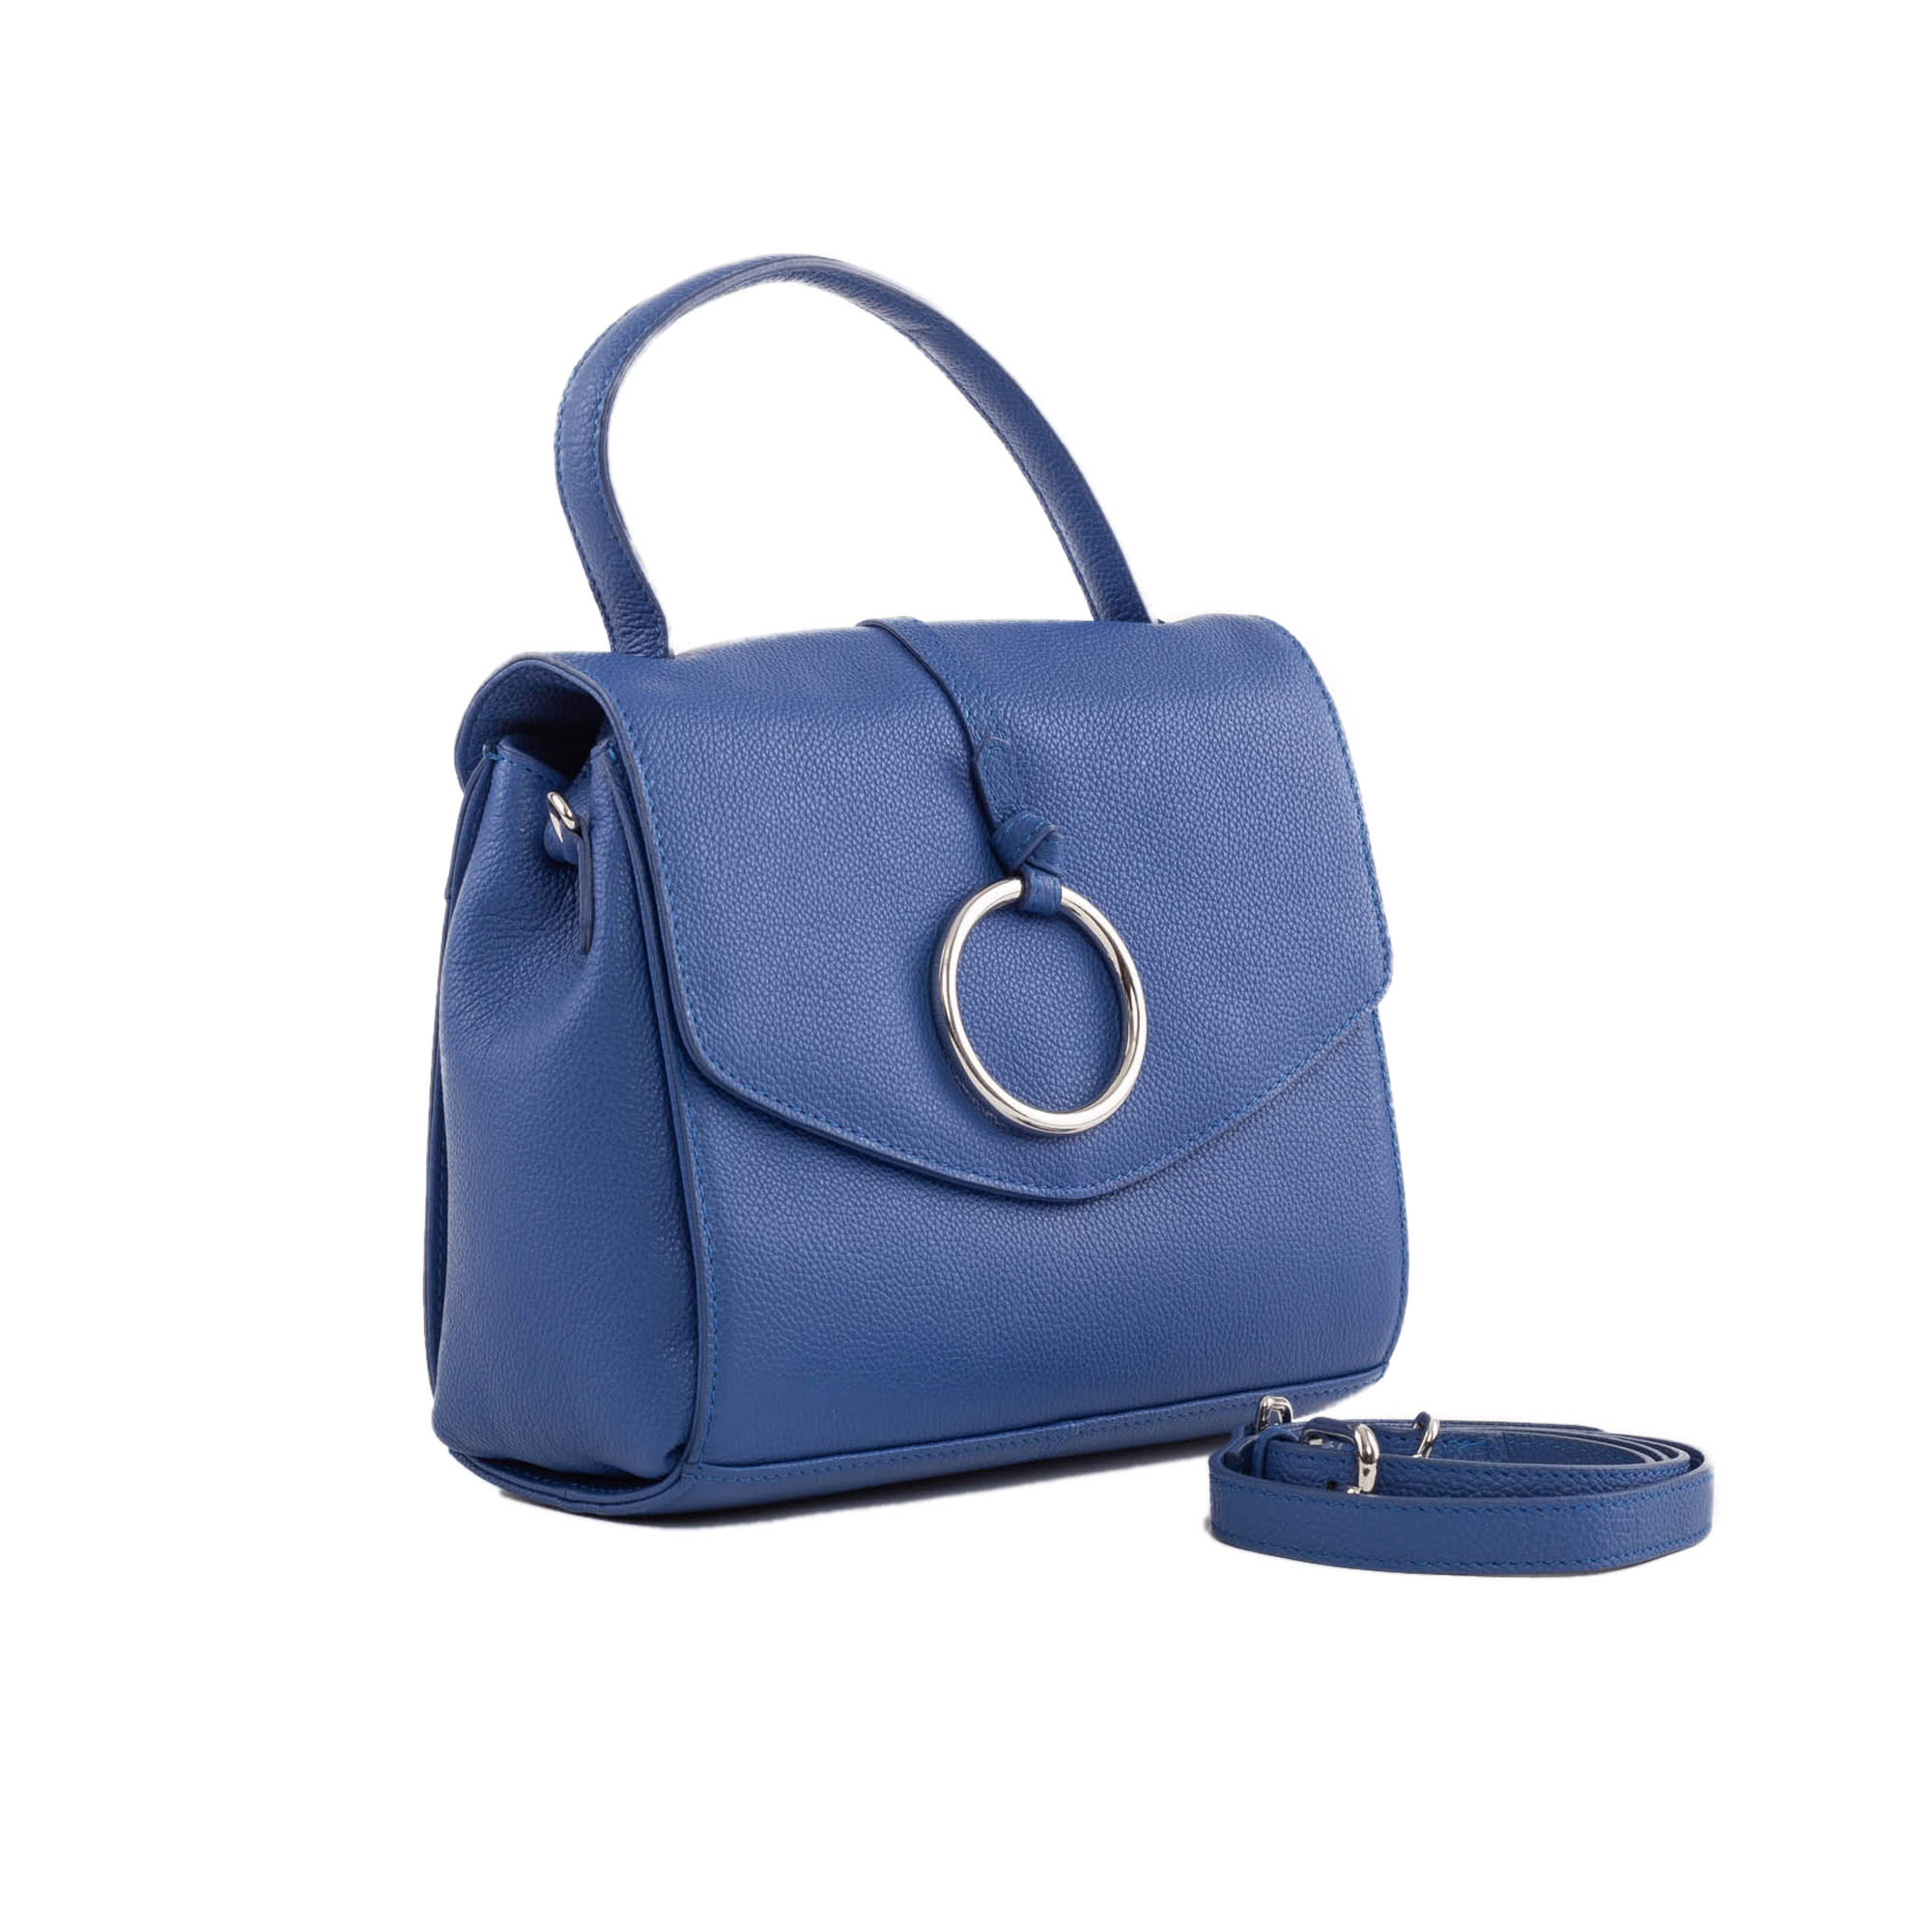 Blu сумки. Tosca Blu сумки. Tosca Blu сумка голубая. Tosca Blu Green Bag. Женская сумка синяя Tosca Blu.